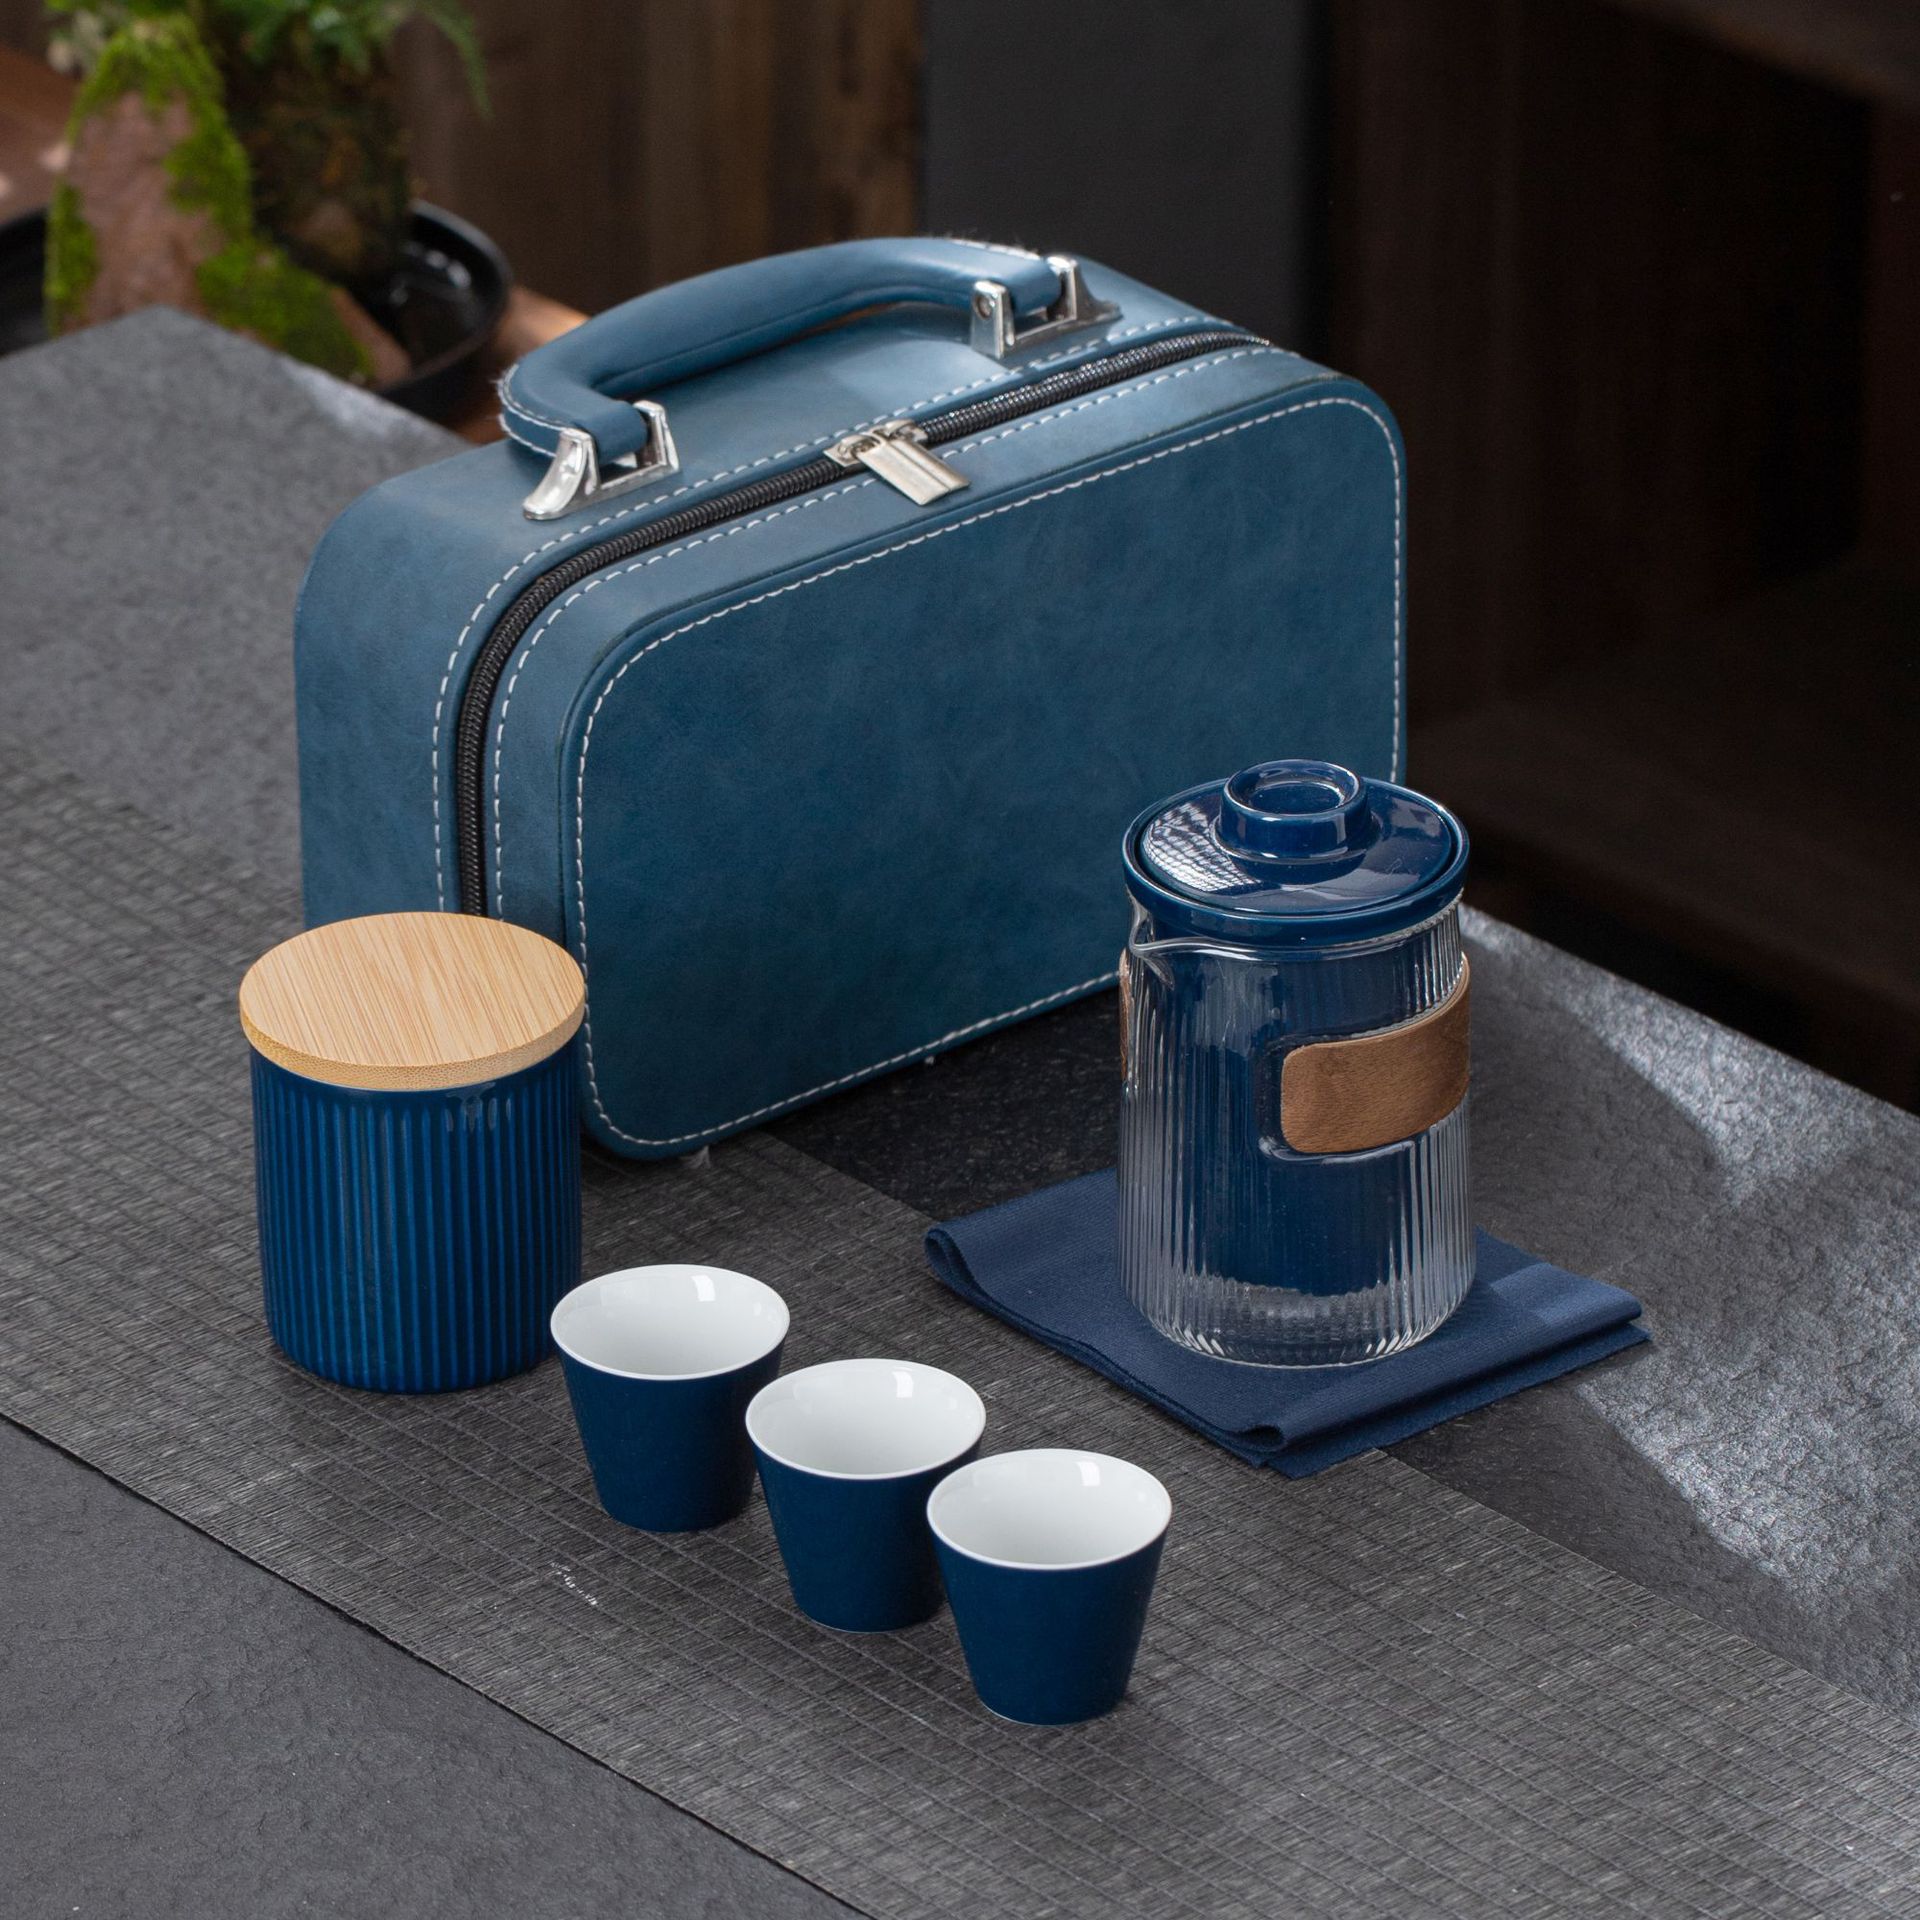 色釉陶瓷户外旅行茶具一壶三杯茶叶罐车载便携包功夫茶具套装批发